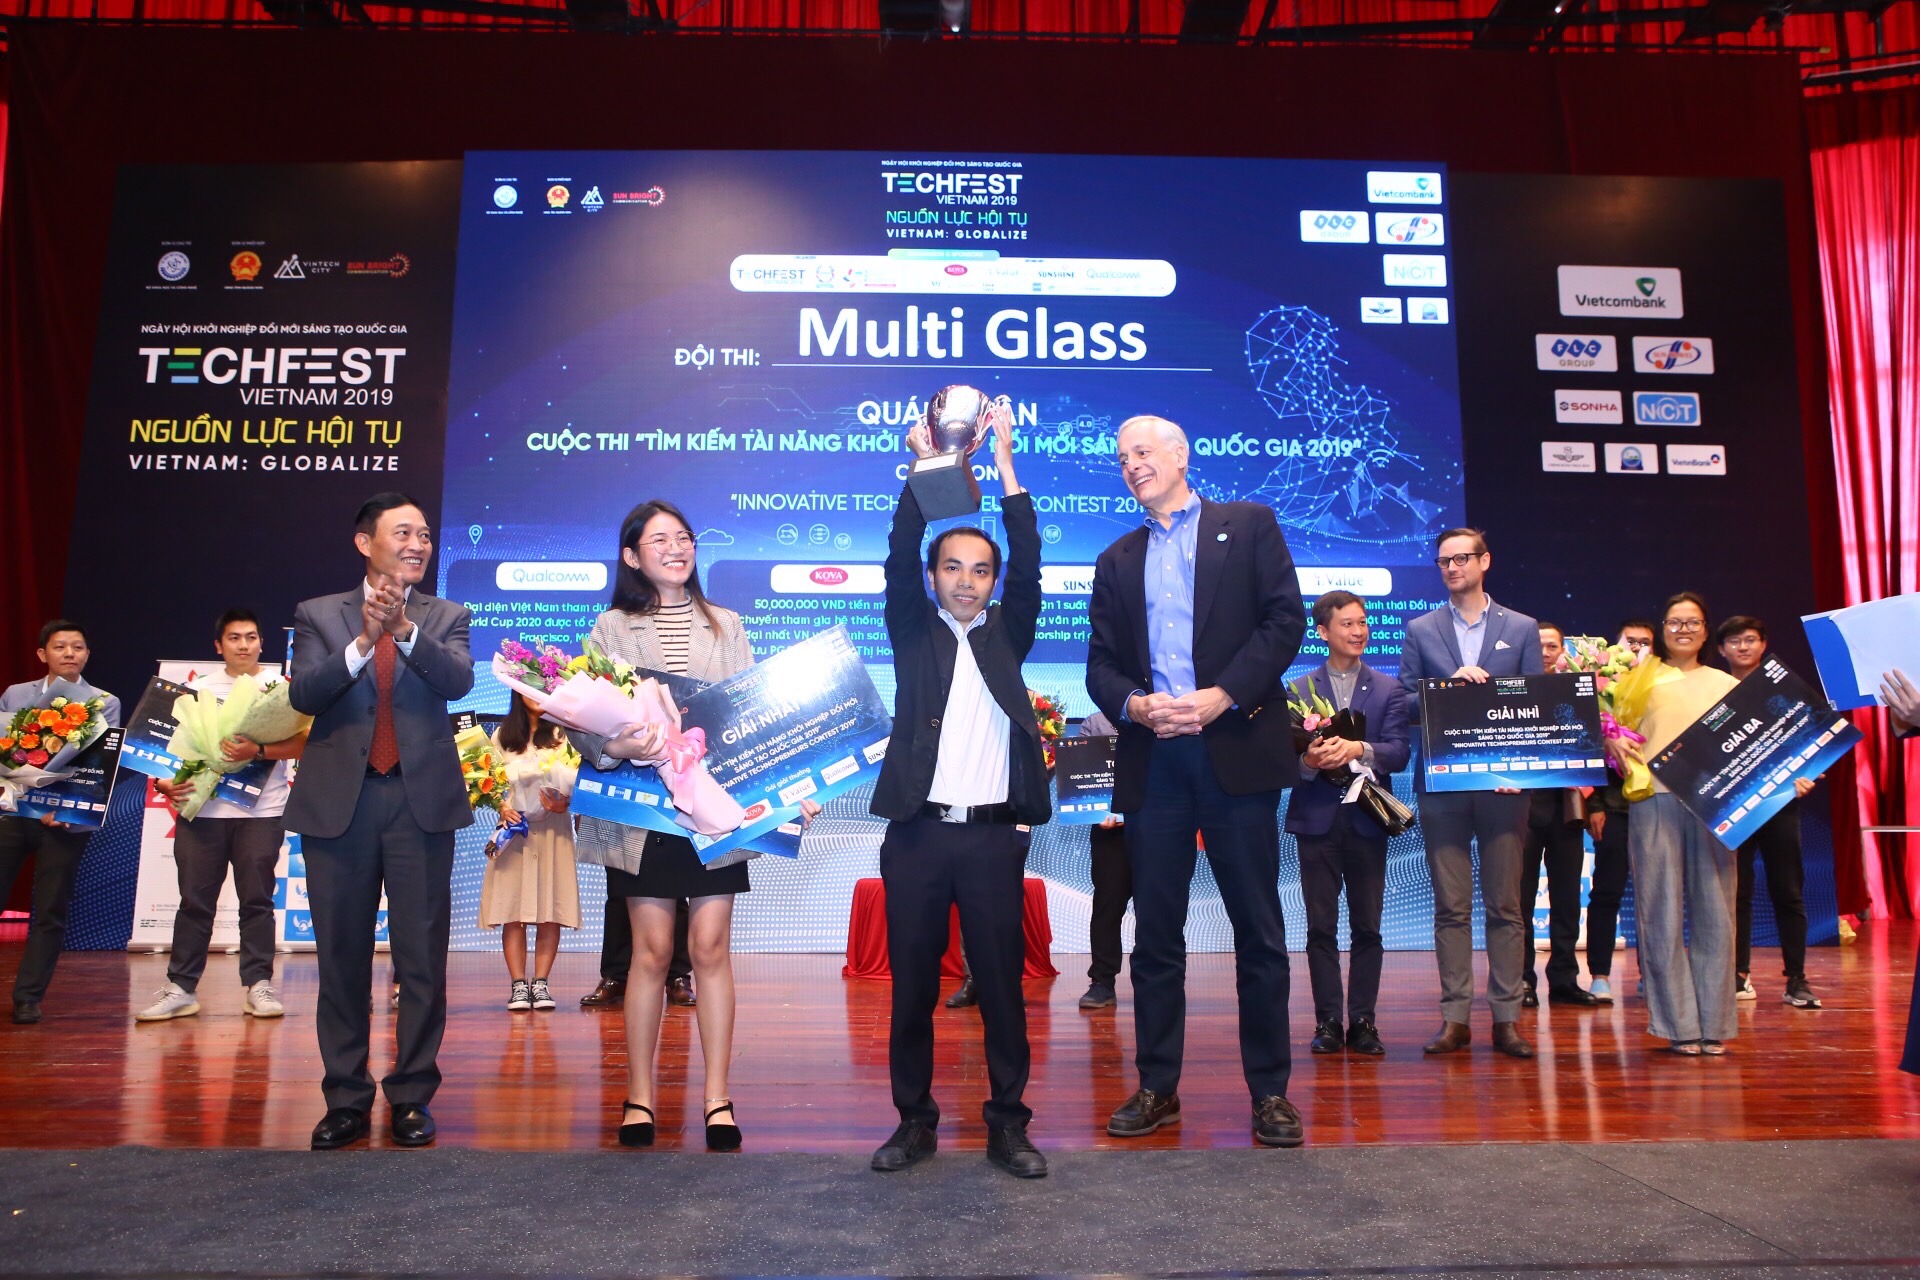 Đội Multi Glass - quán quân cuộc thi “Tìm kiếm tài năng khởi nghiệp đổi mới sáng tạo quốc gia 2019”